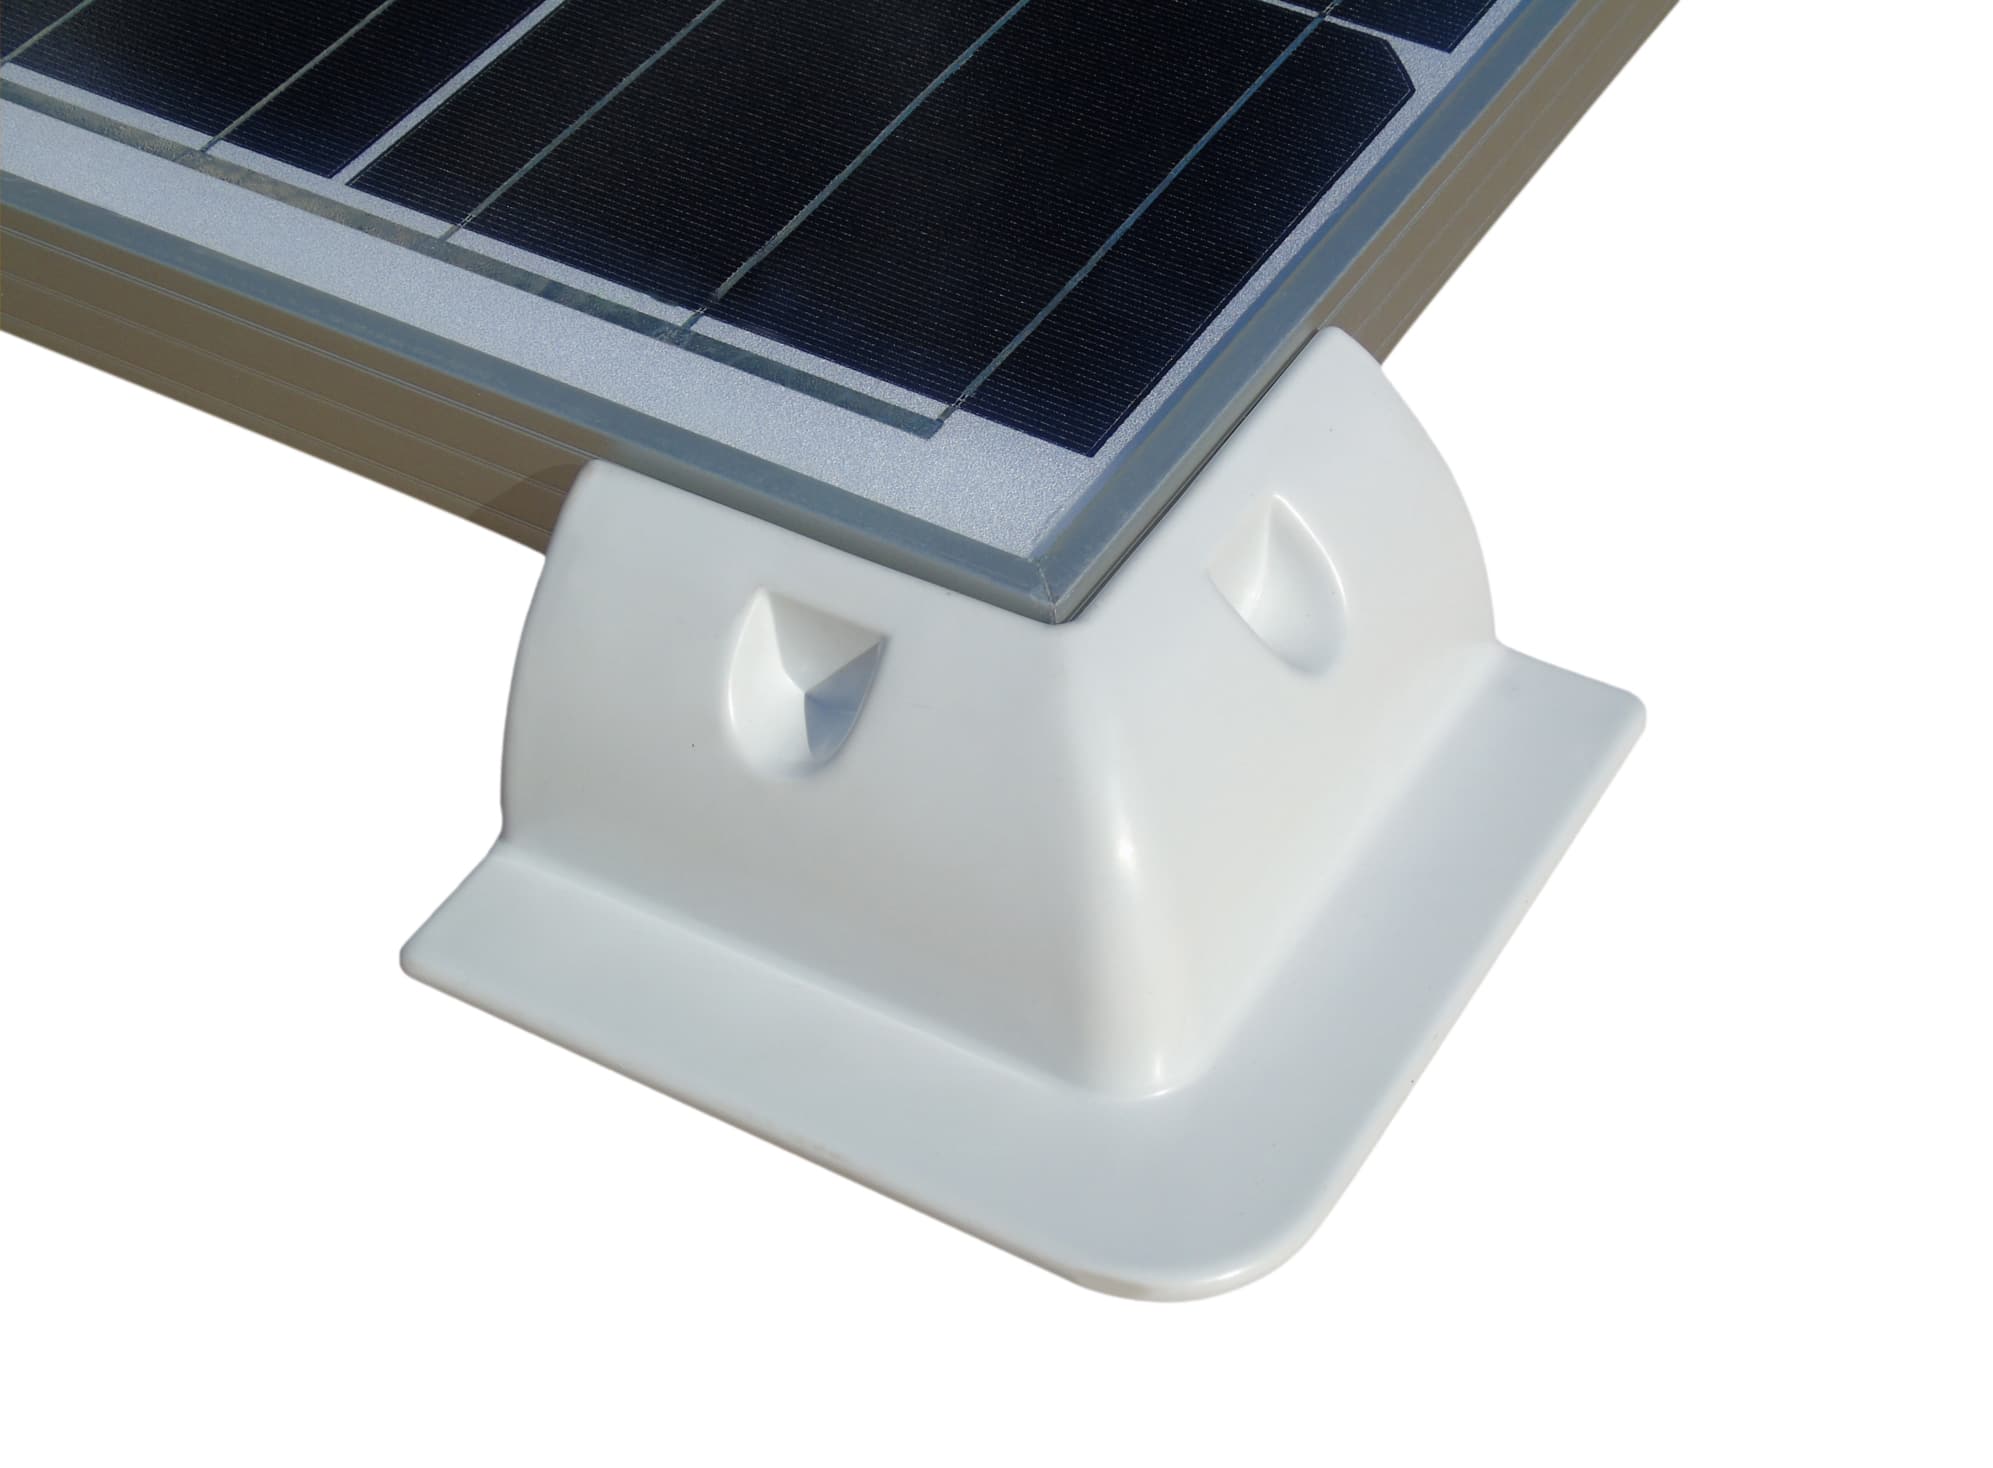 Solarmodul Halterung 4 x Eckprofil Wohnmobil Camping Solarhalterung weiß  online bestellen ☀️